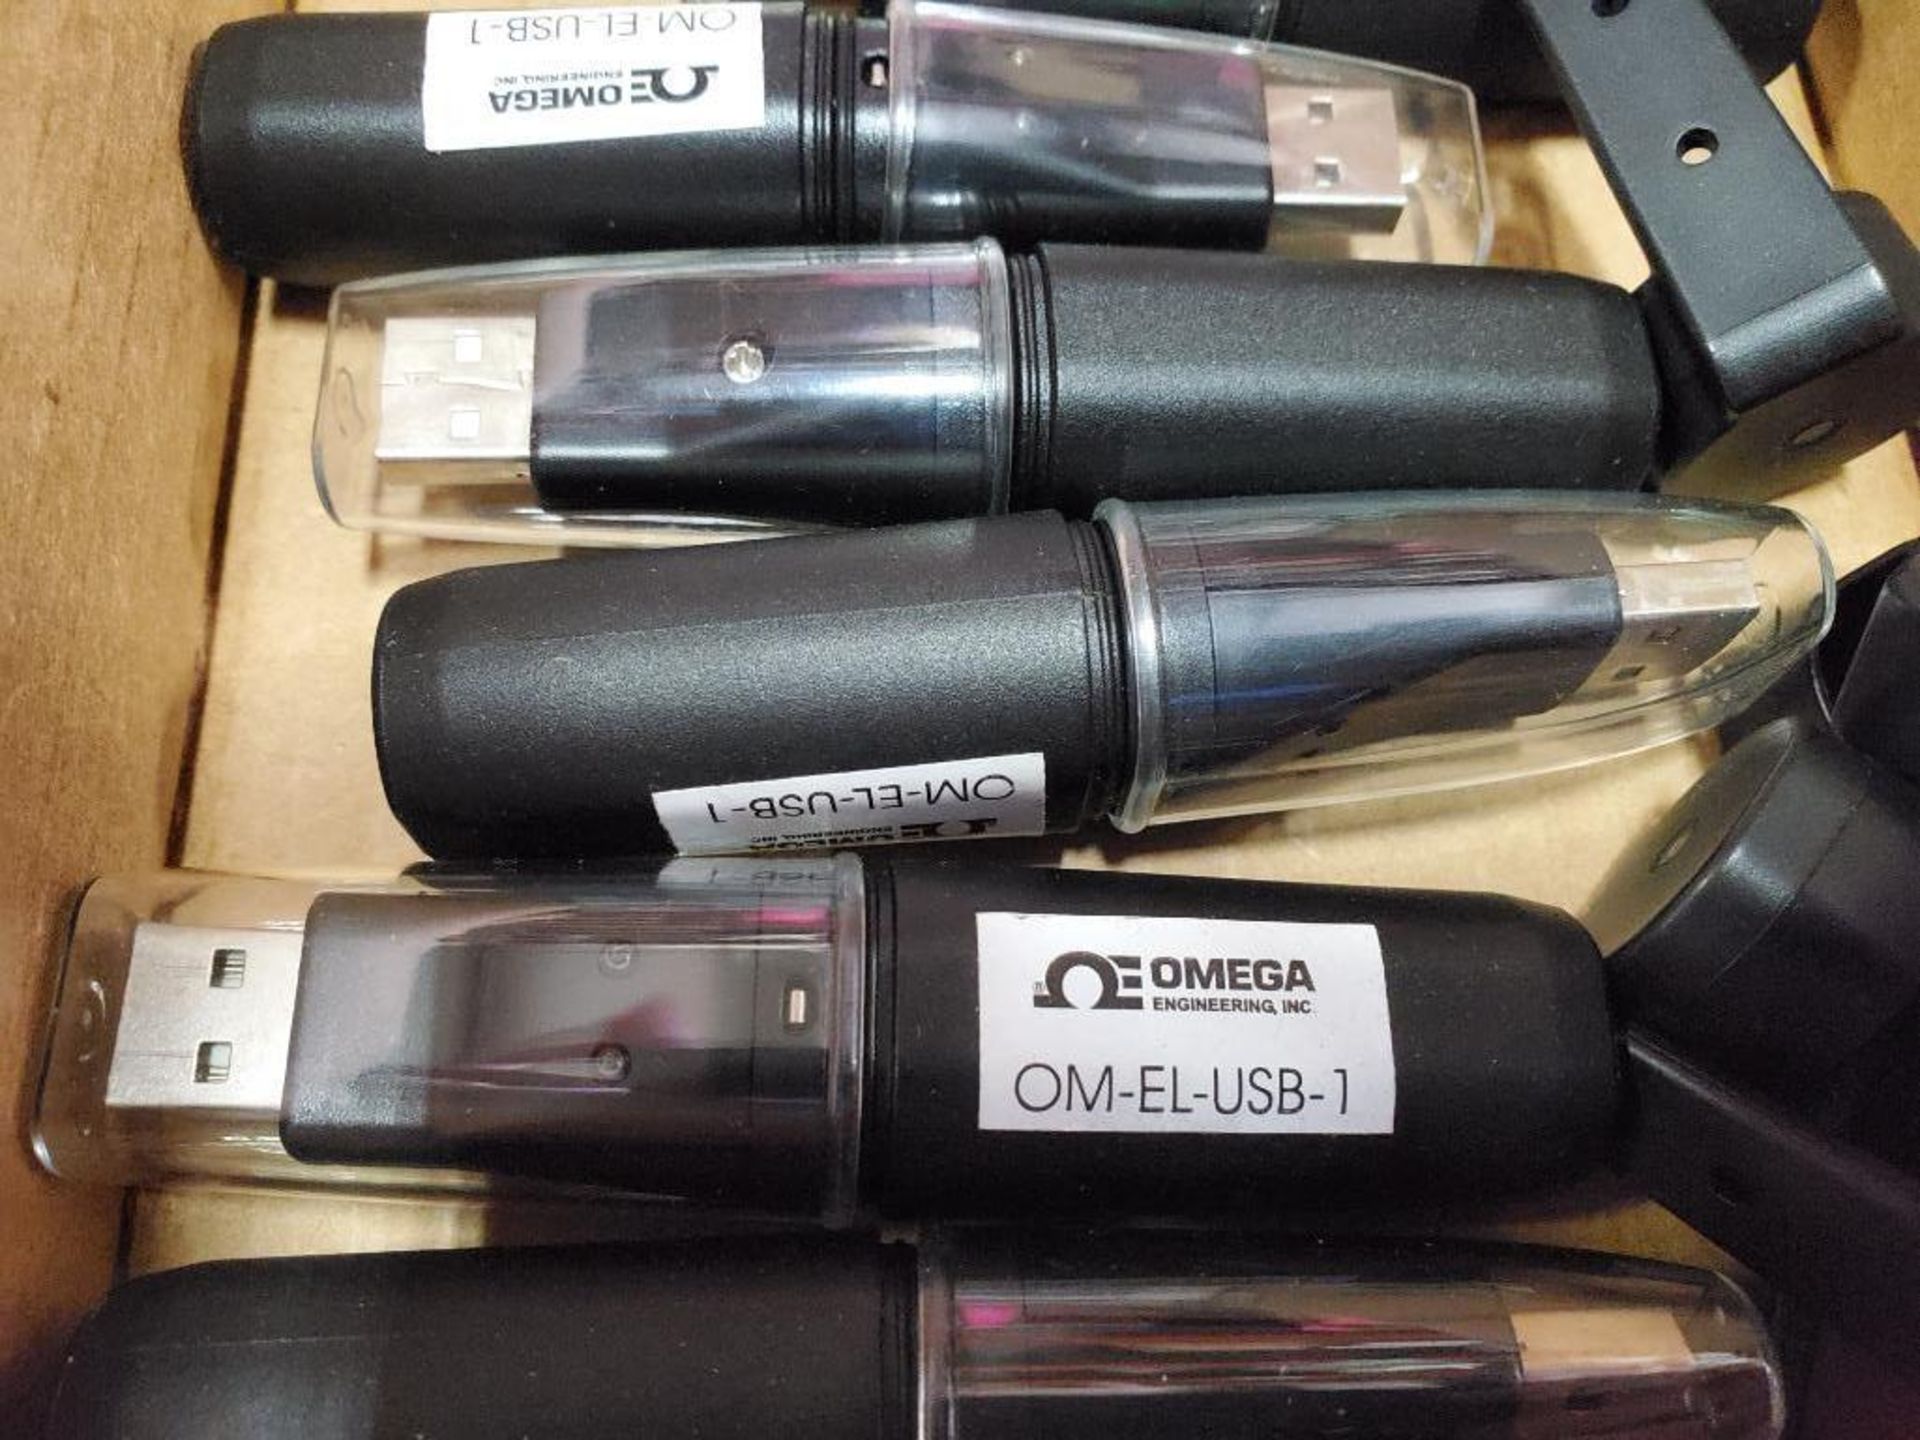 Qty 10 - Omega USB temperature logger. Part number OM-EL-USB-1. - Image 3 of 4